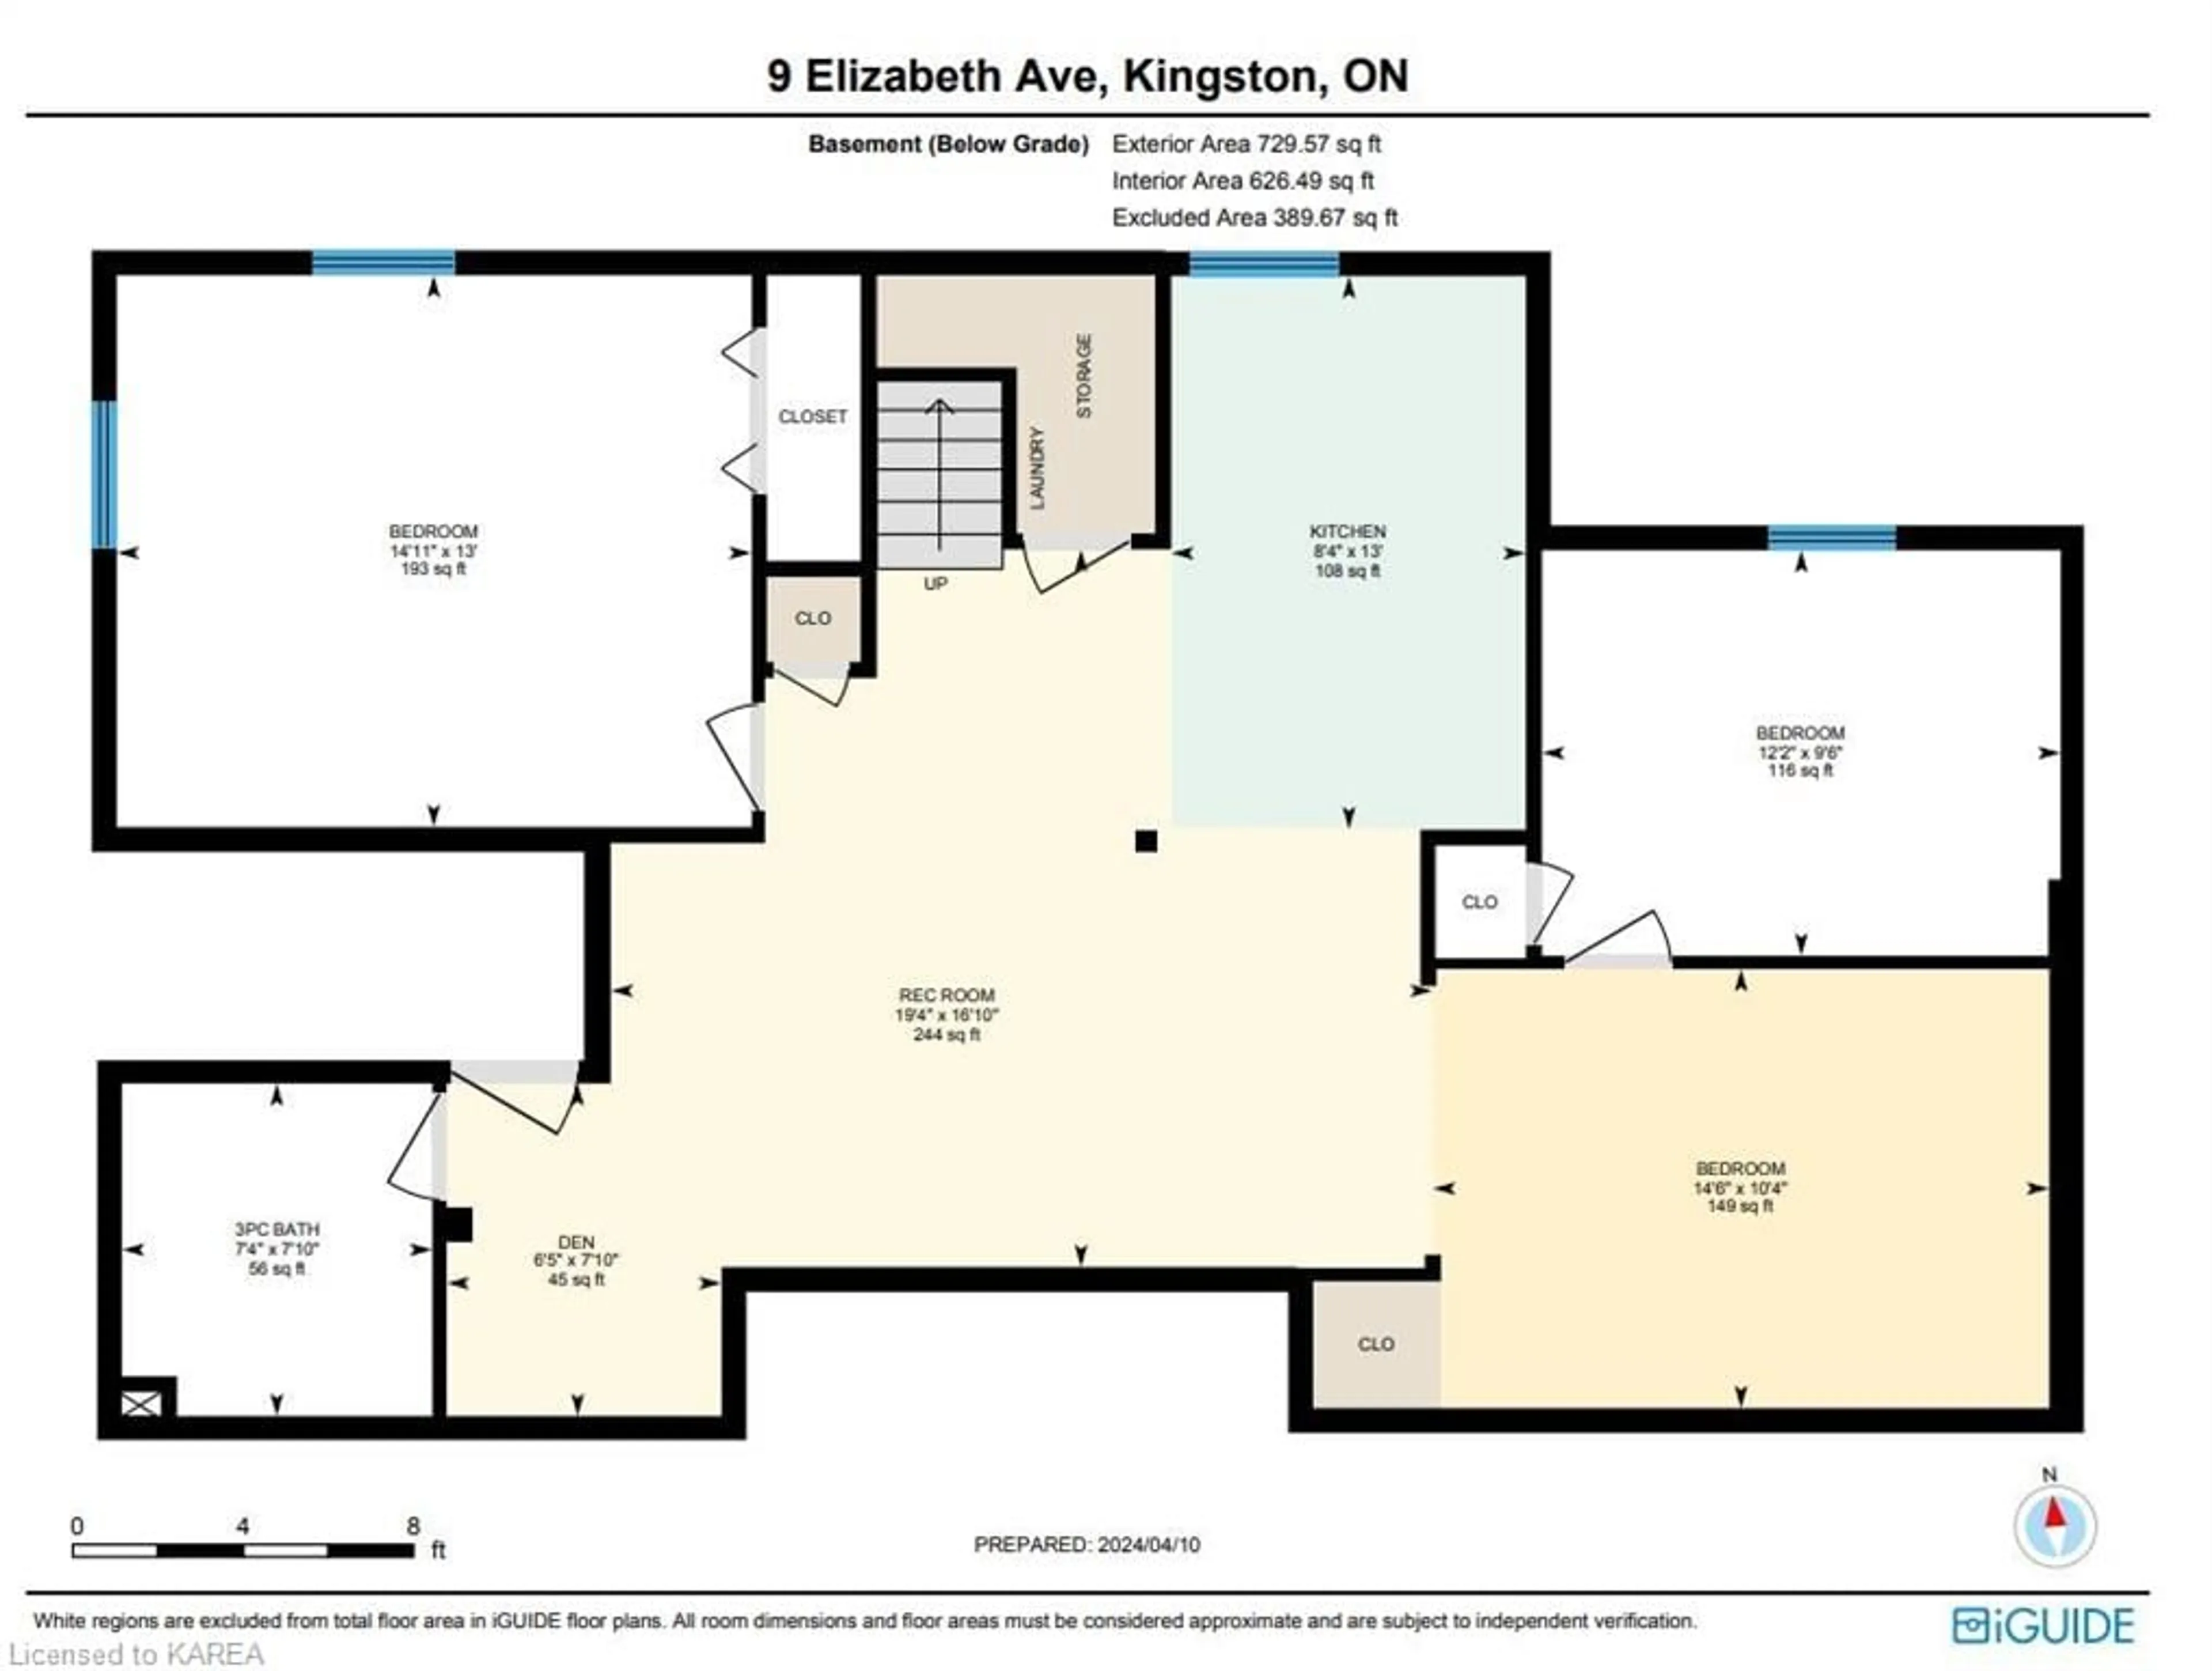 Floor plan for 9 Elizabeth Ave, Kingston Ontario K7M 3G9